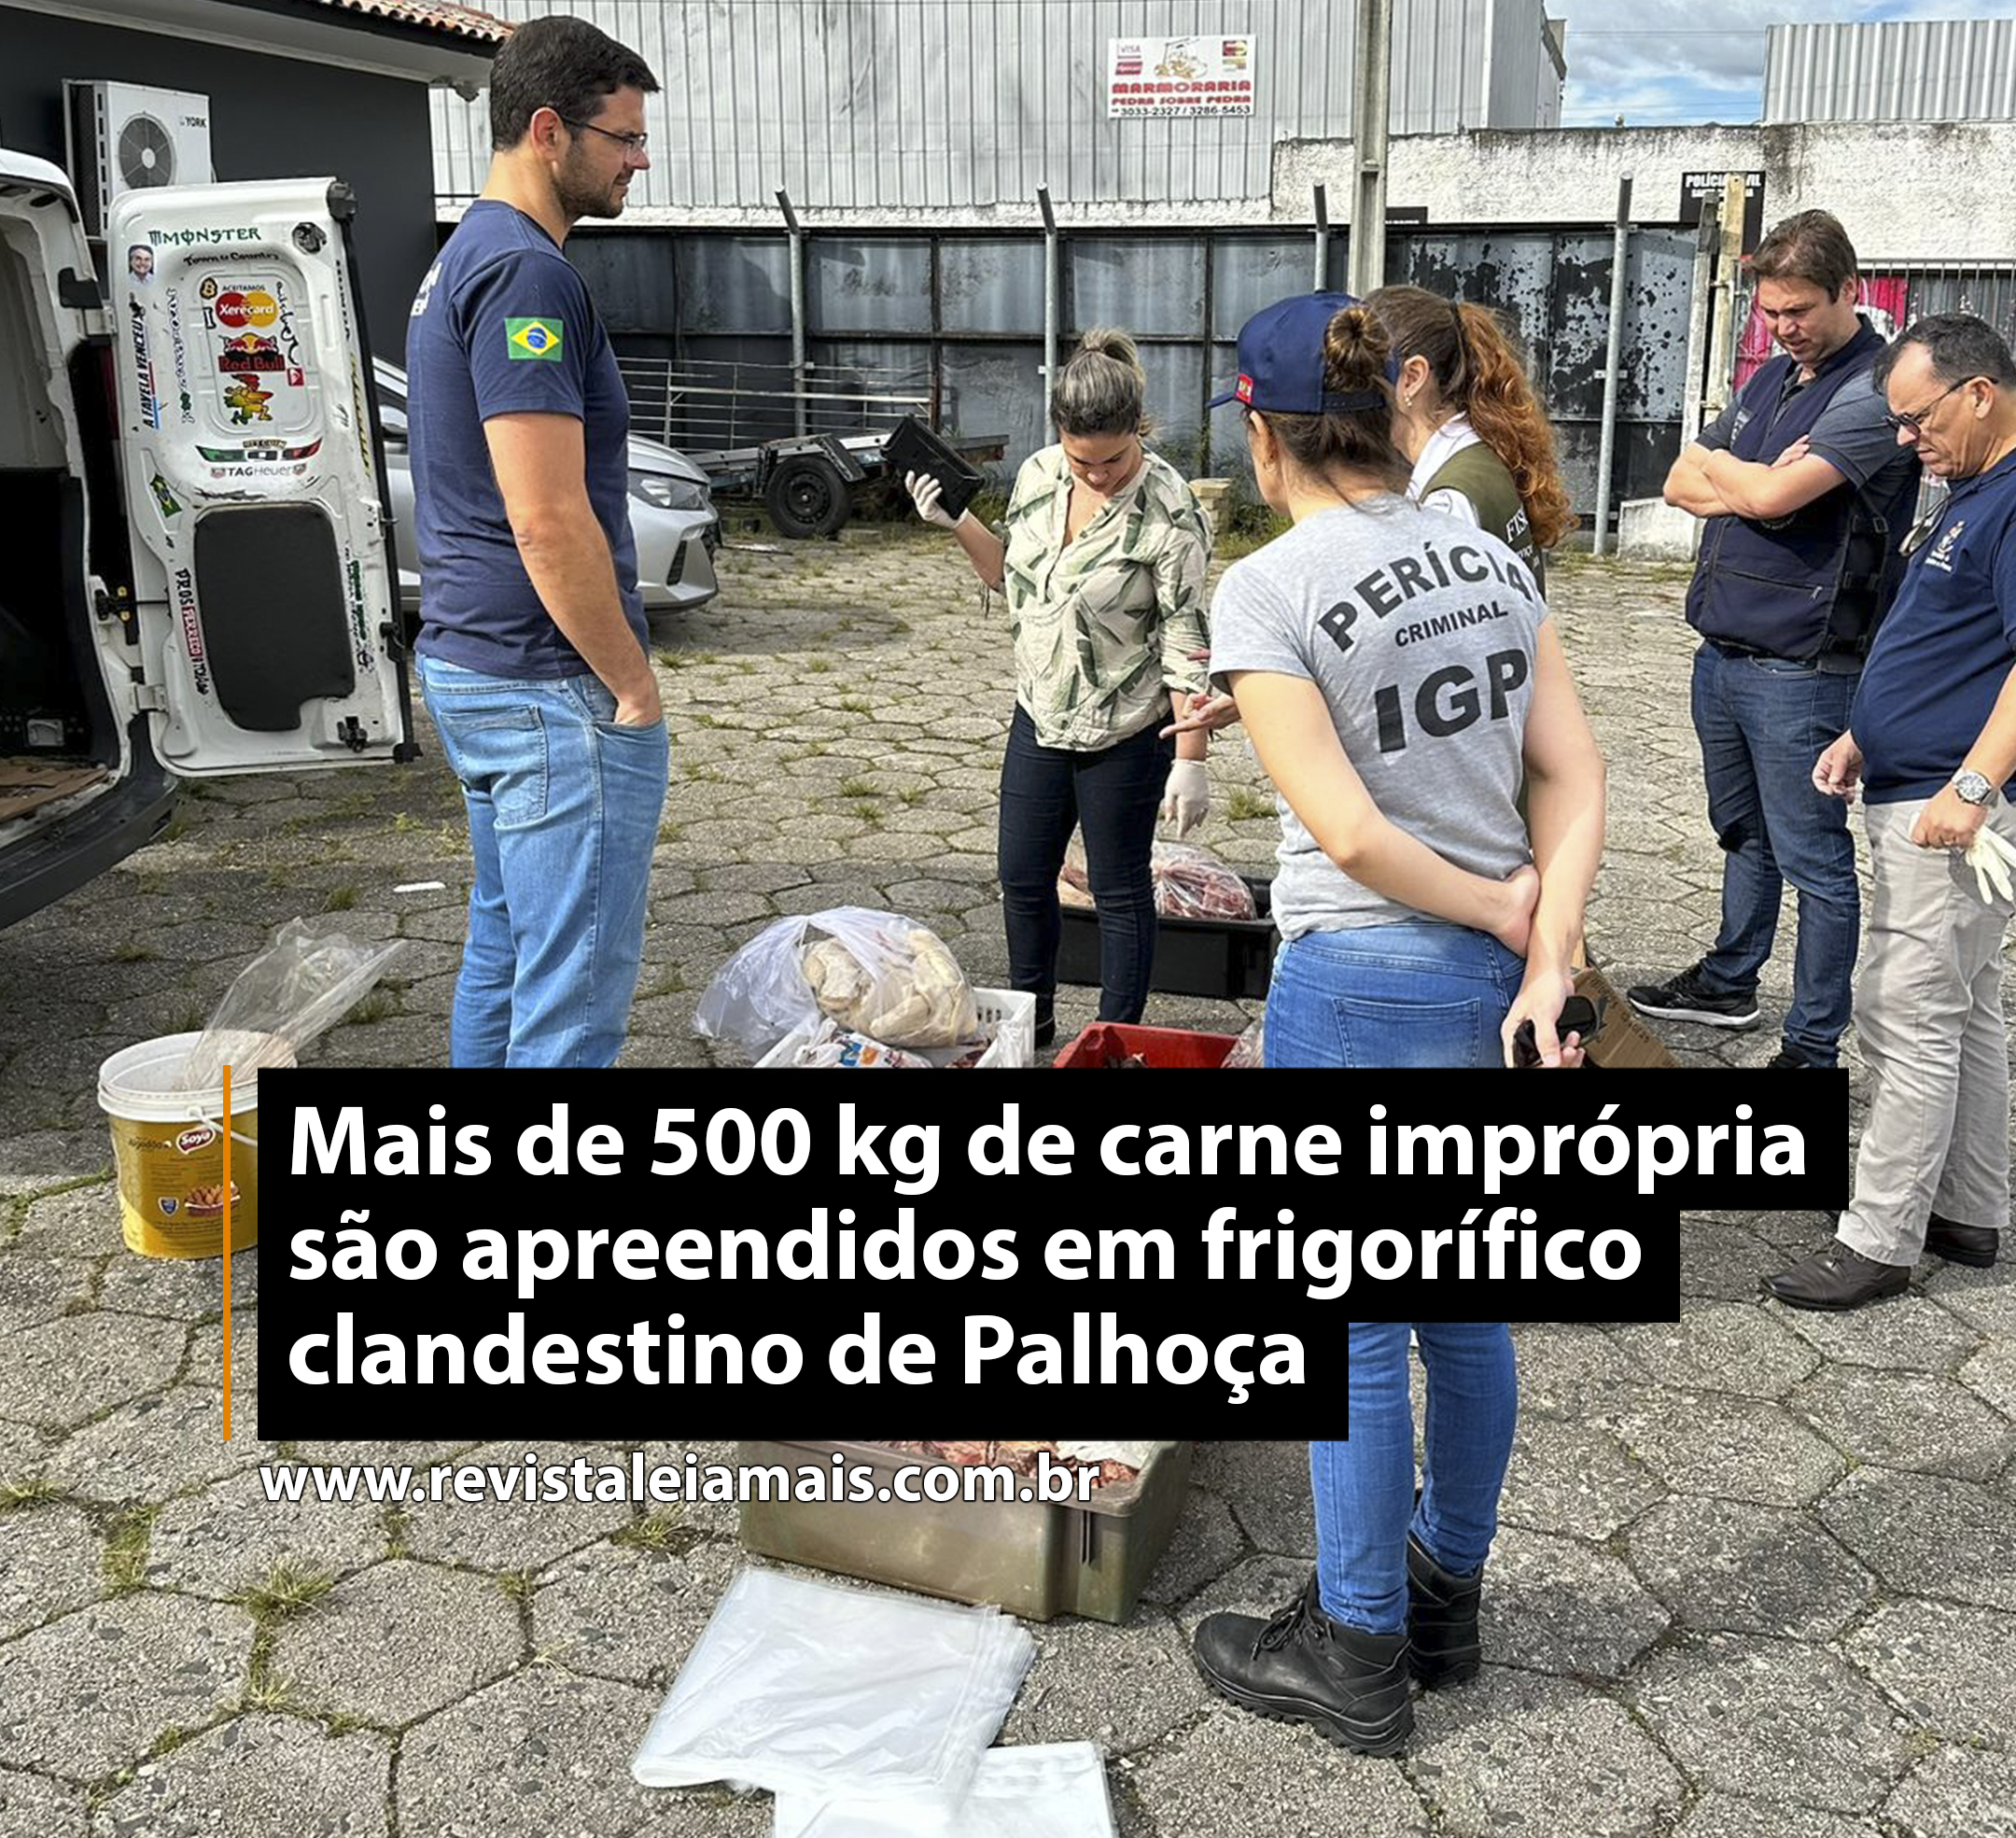 Mais de 500 kg de carne imprópria são apreendidos em frigorífico clandestino de Palhoça